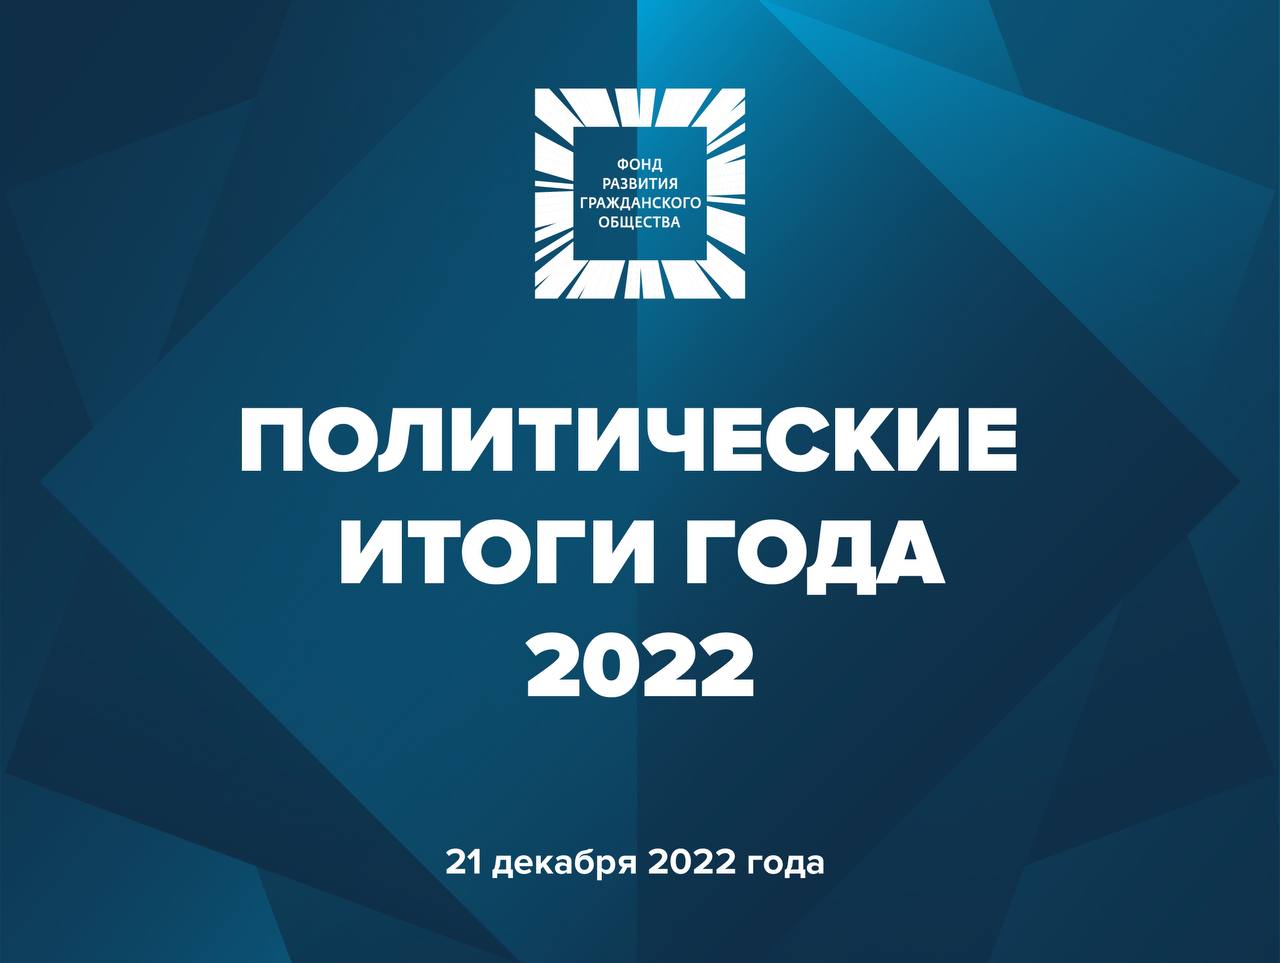 Фонд развития гражданского общества. Итоги года 2022. Парфенов итоги года 2022. Форго